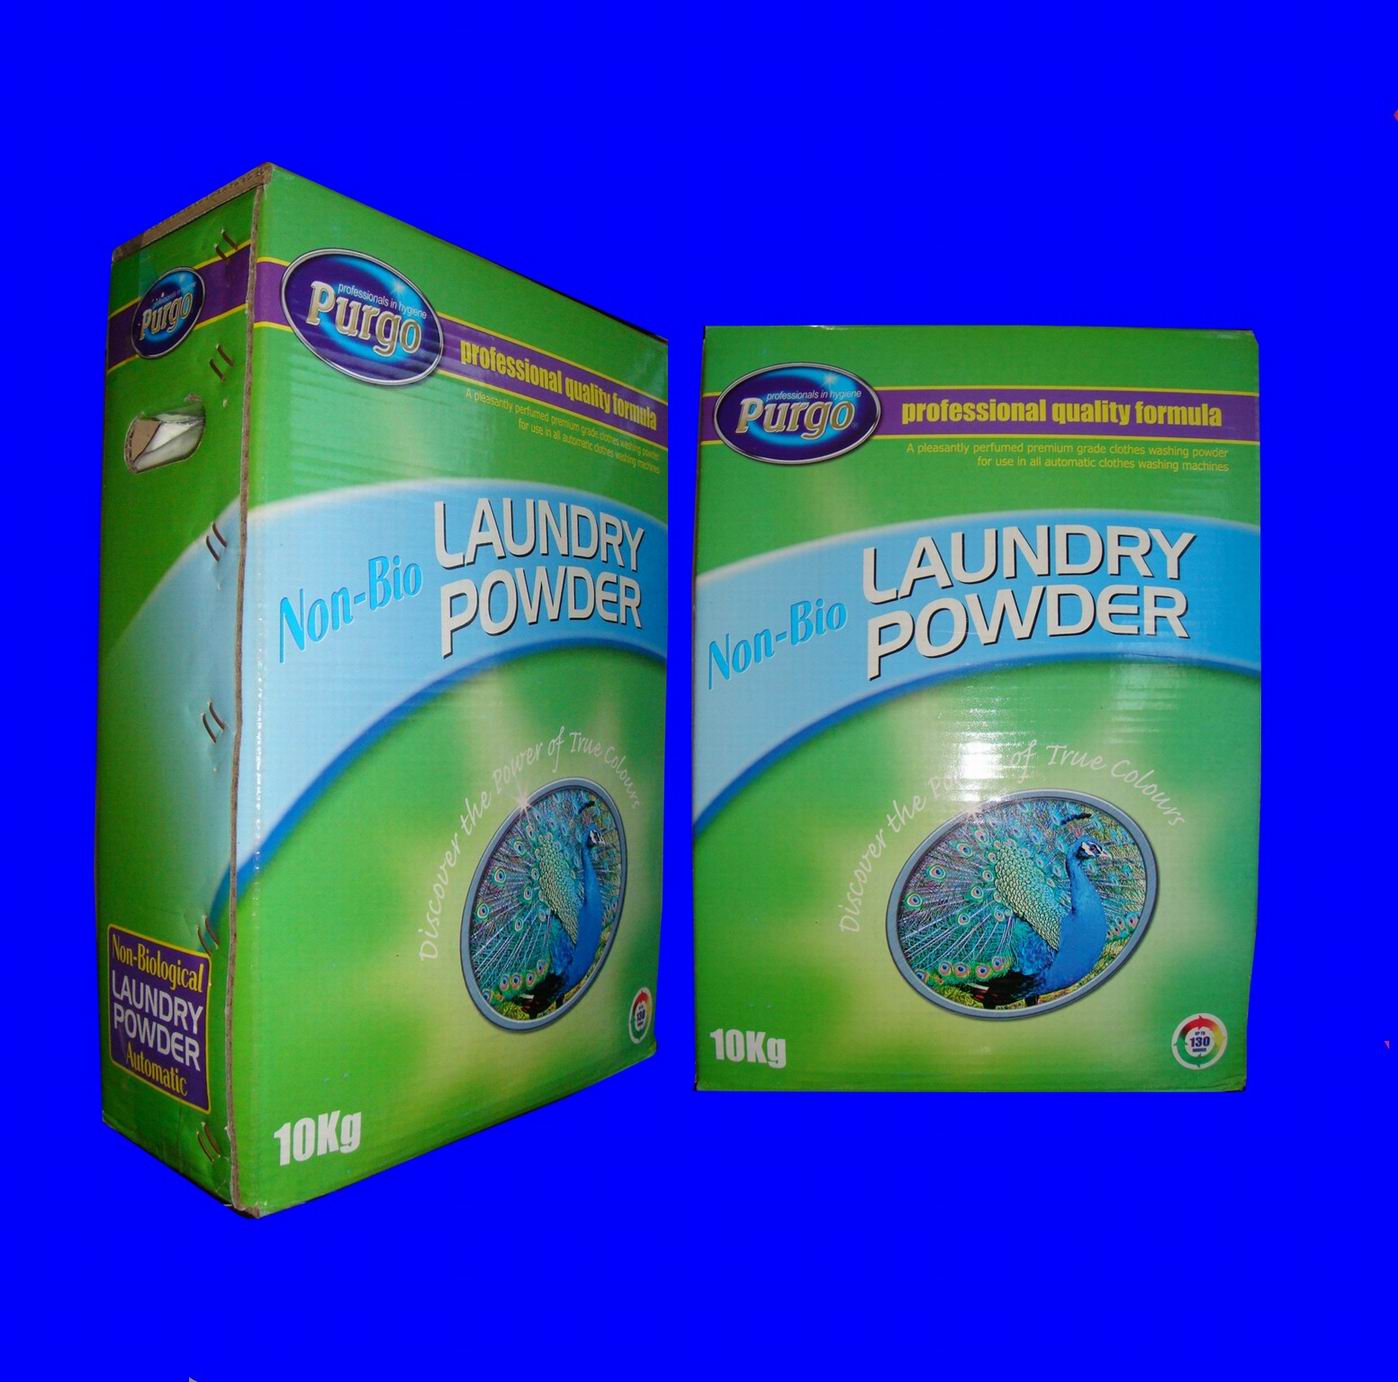 box packing detergent powder,box packing washing powder,box packing laundry powder